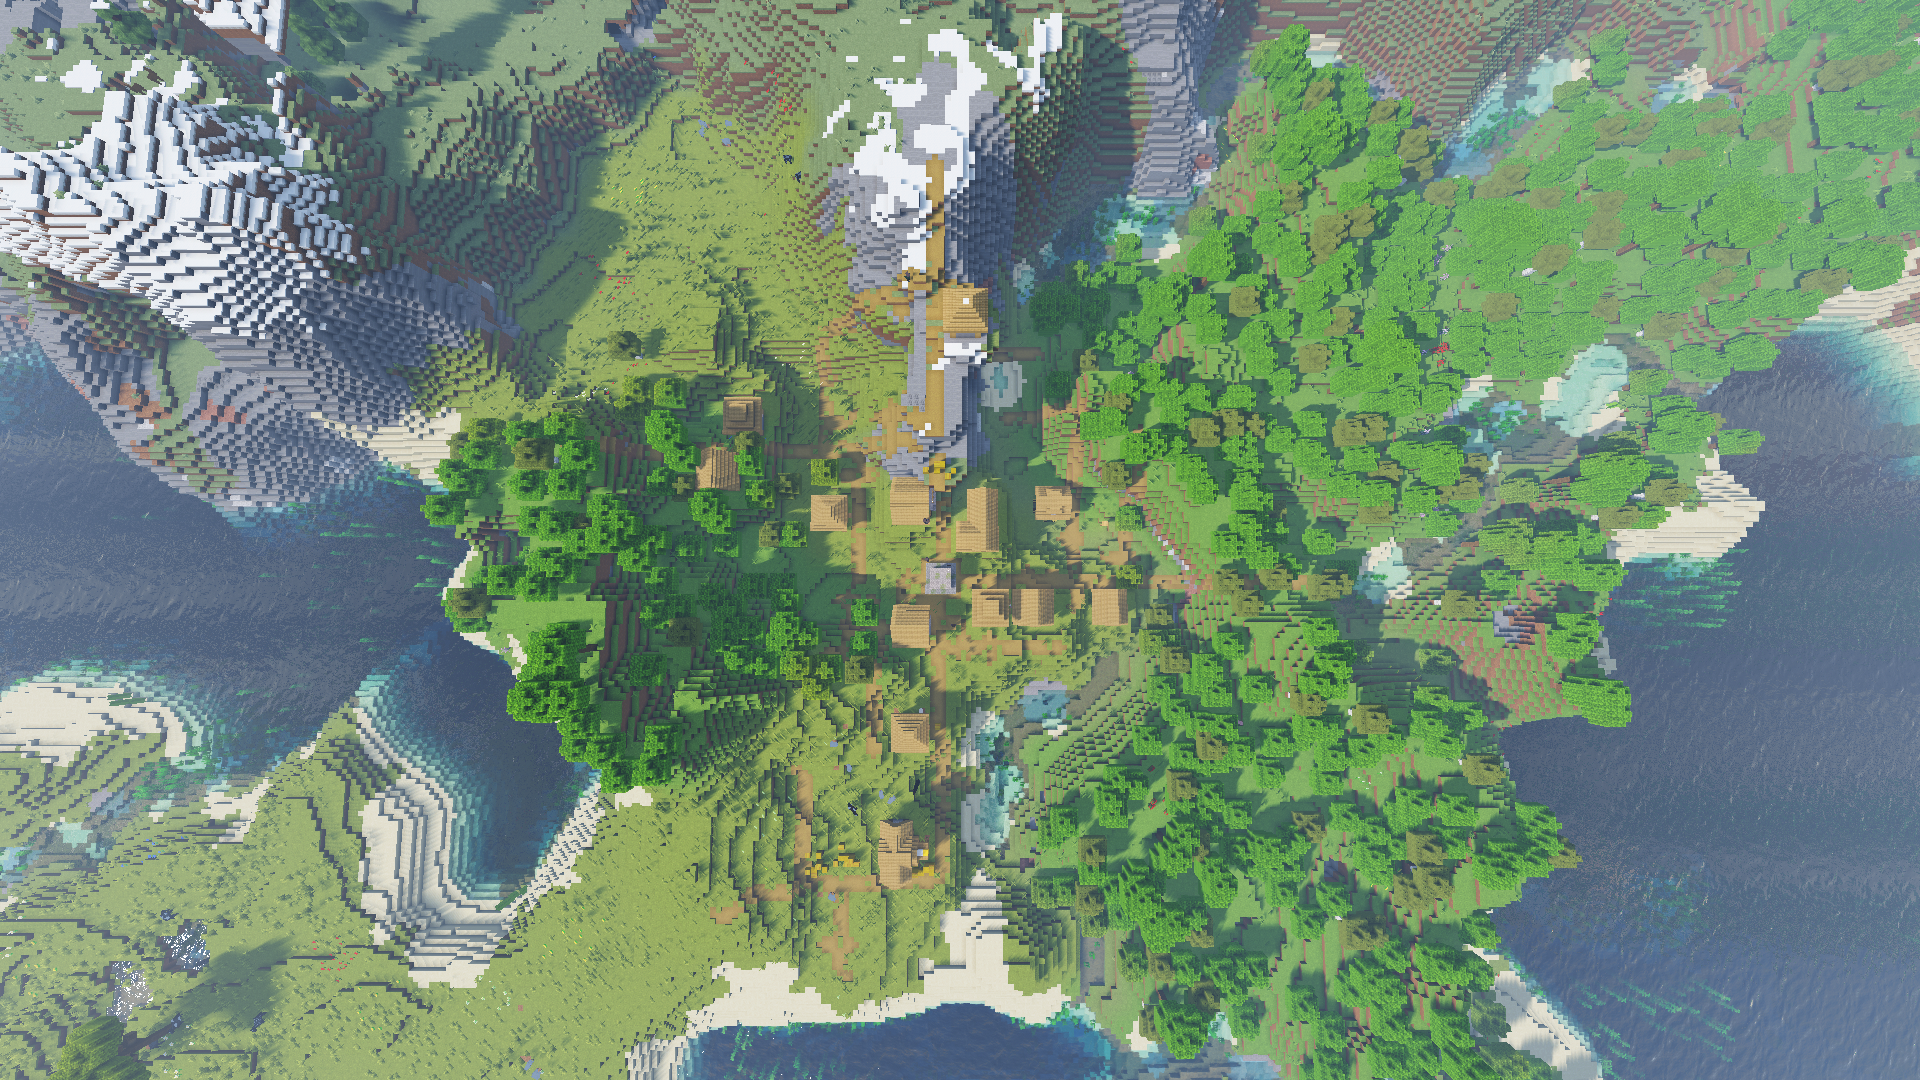 Wallpaper, Minecraft, landscape, aerial view, forest, village 1920x1080